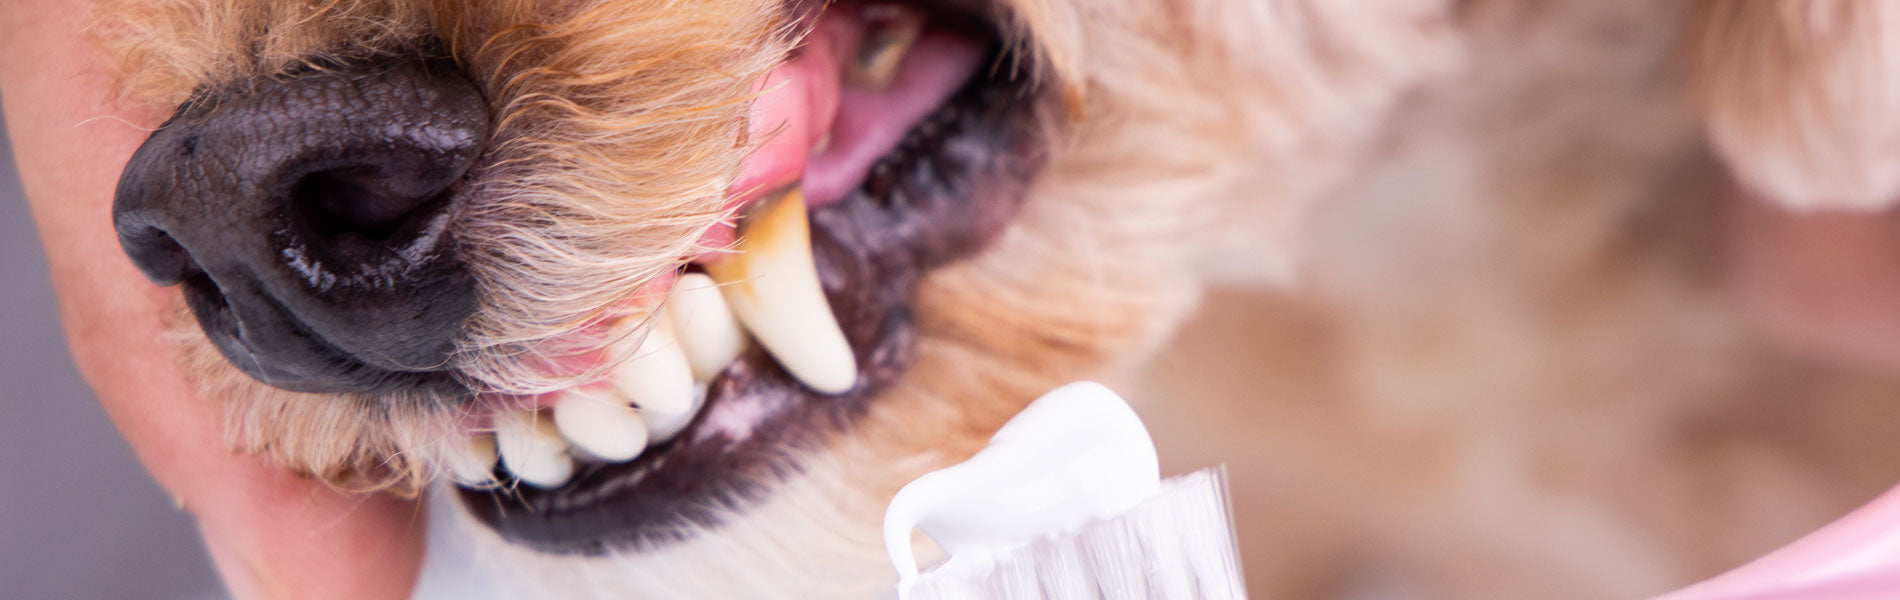 Limpieza dental para perros servicios de destartraje en clinica veterinaria chicureo